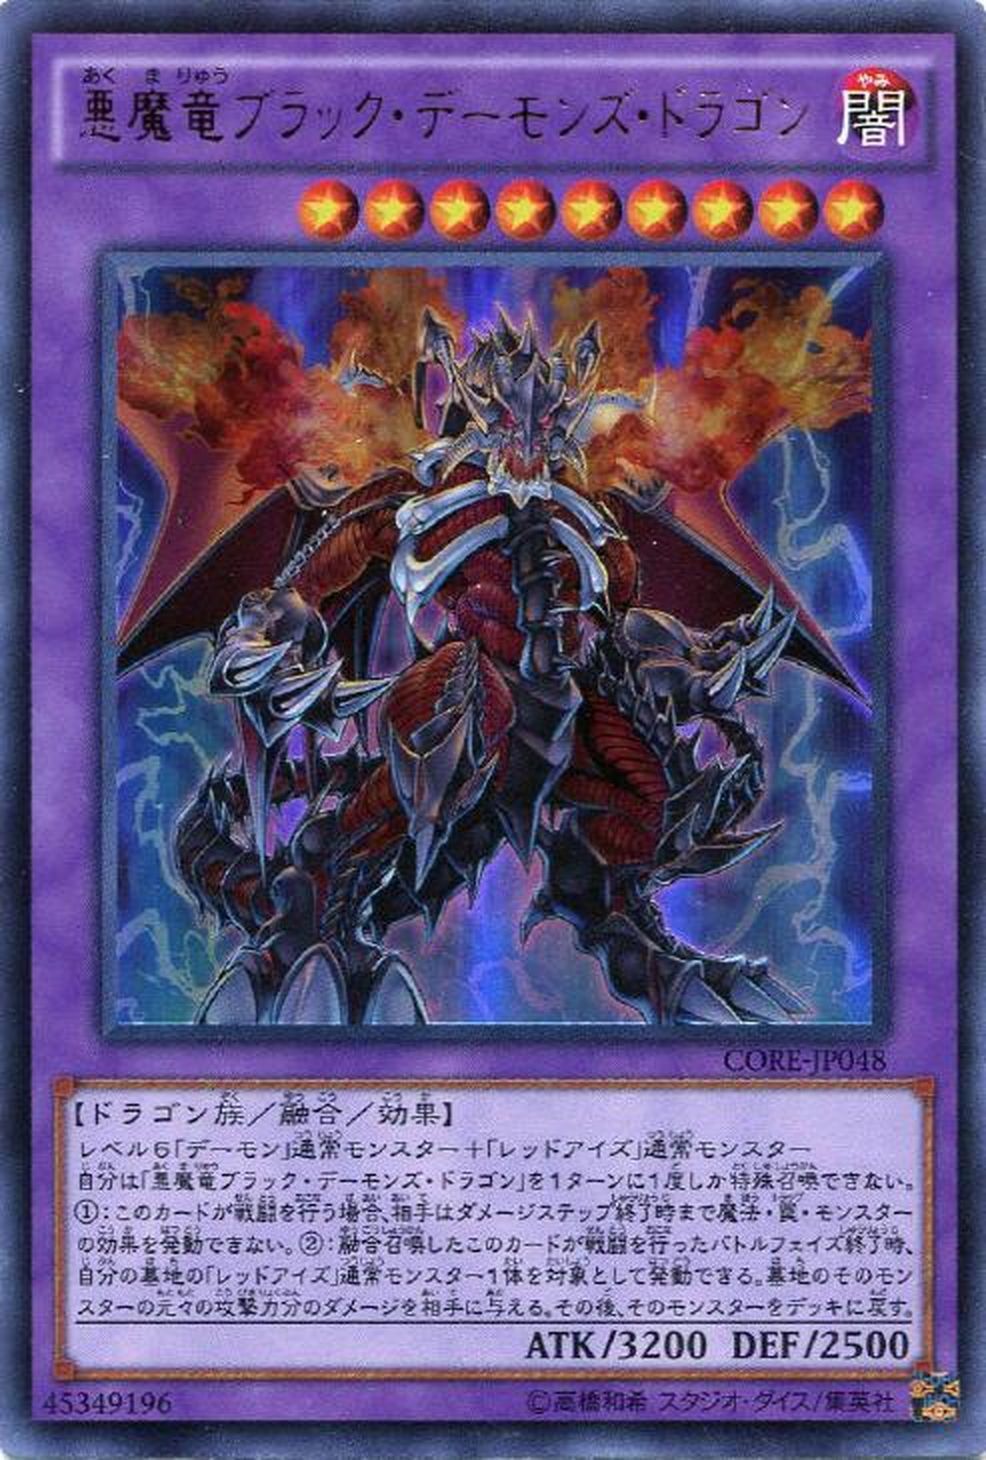 【Ultra】悪魔竜ブラック・デーモンズ・ドラゴン[YGO_CORE-JP048] - マスターズスクウェア通販